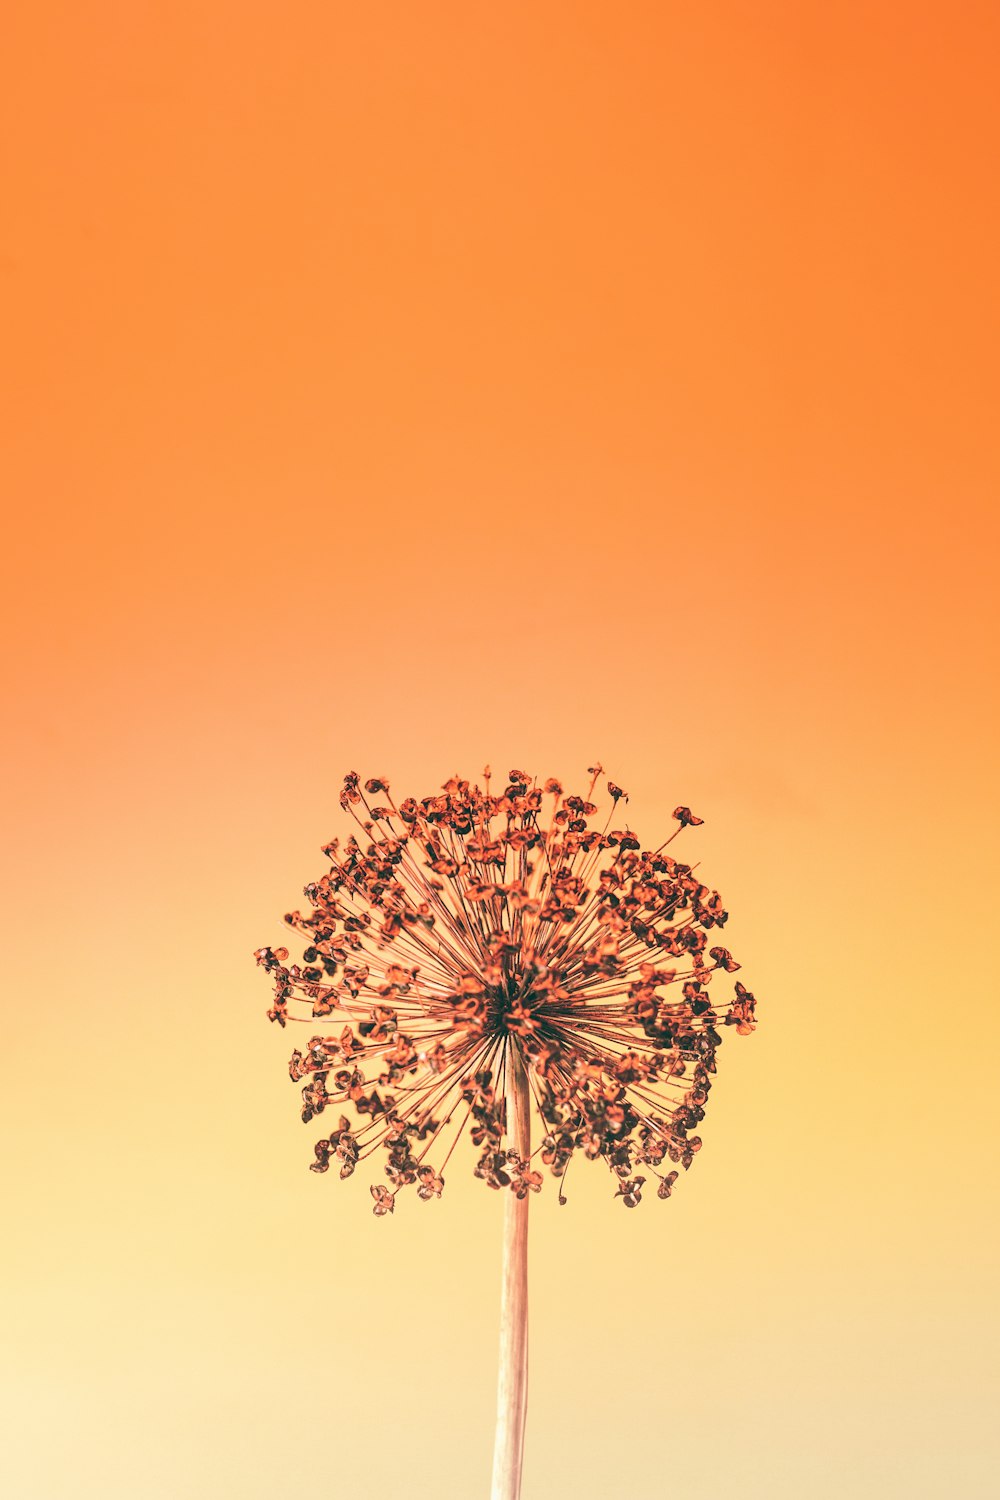 a dandelion in front of an orange sky